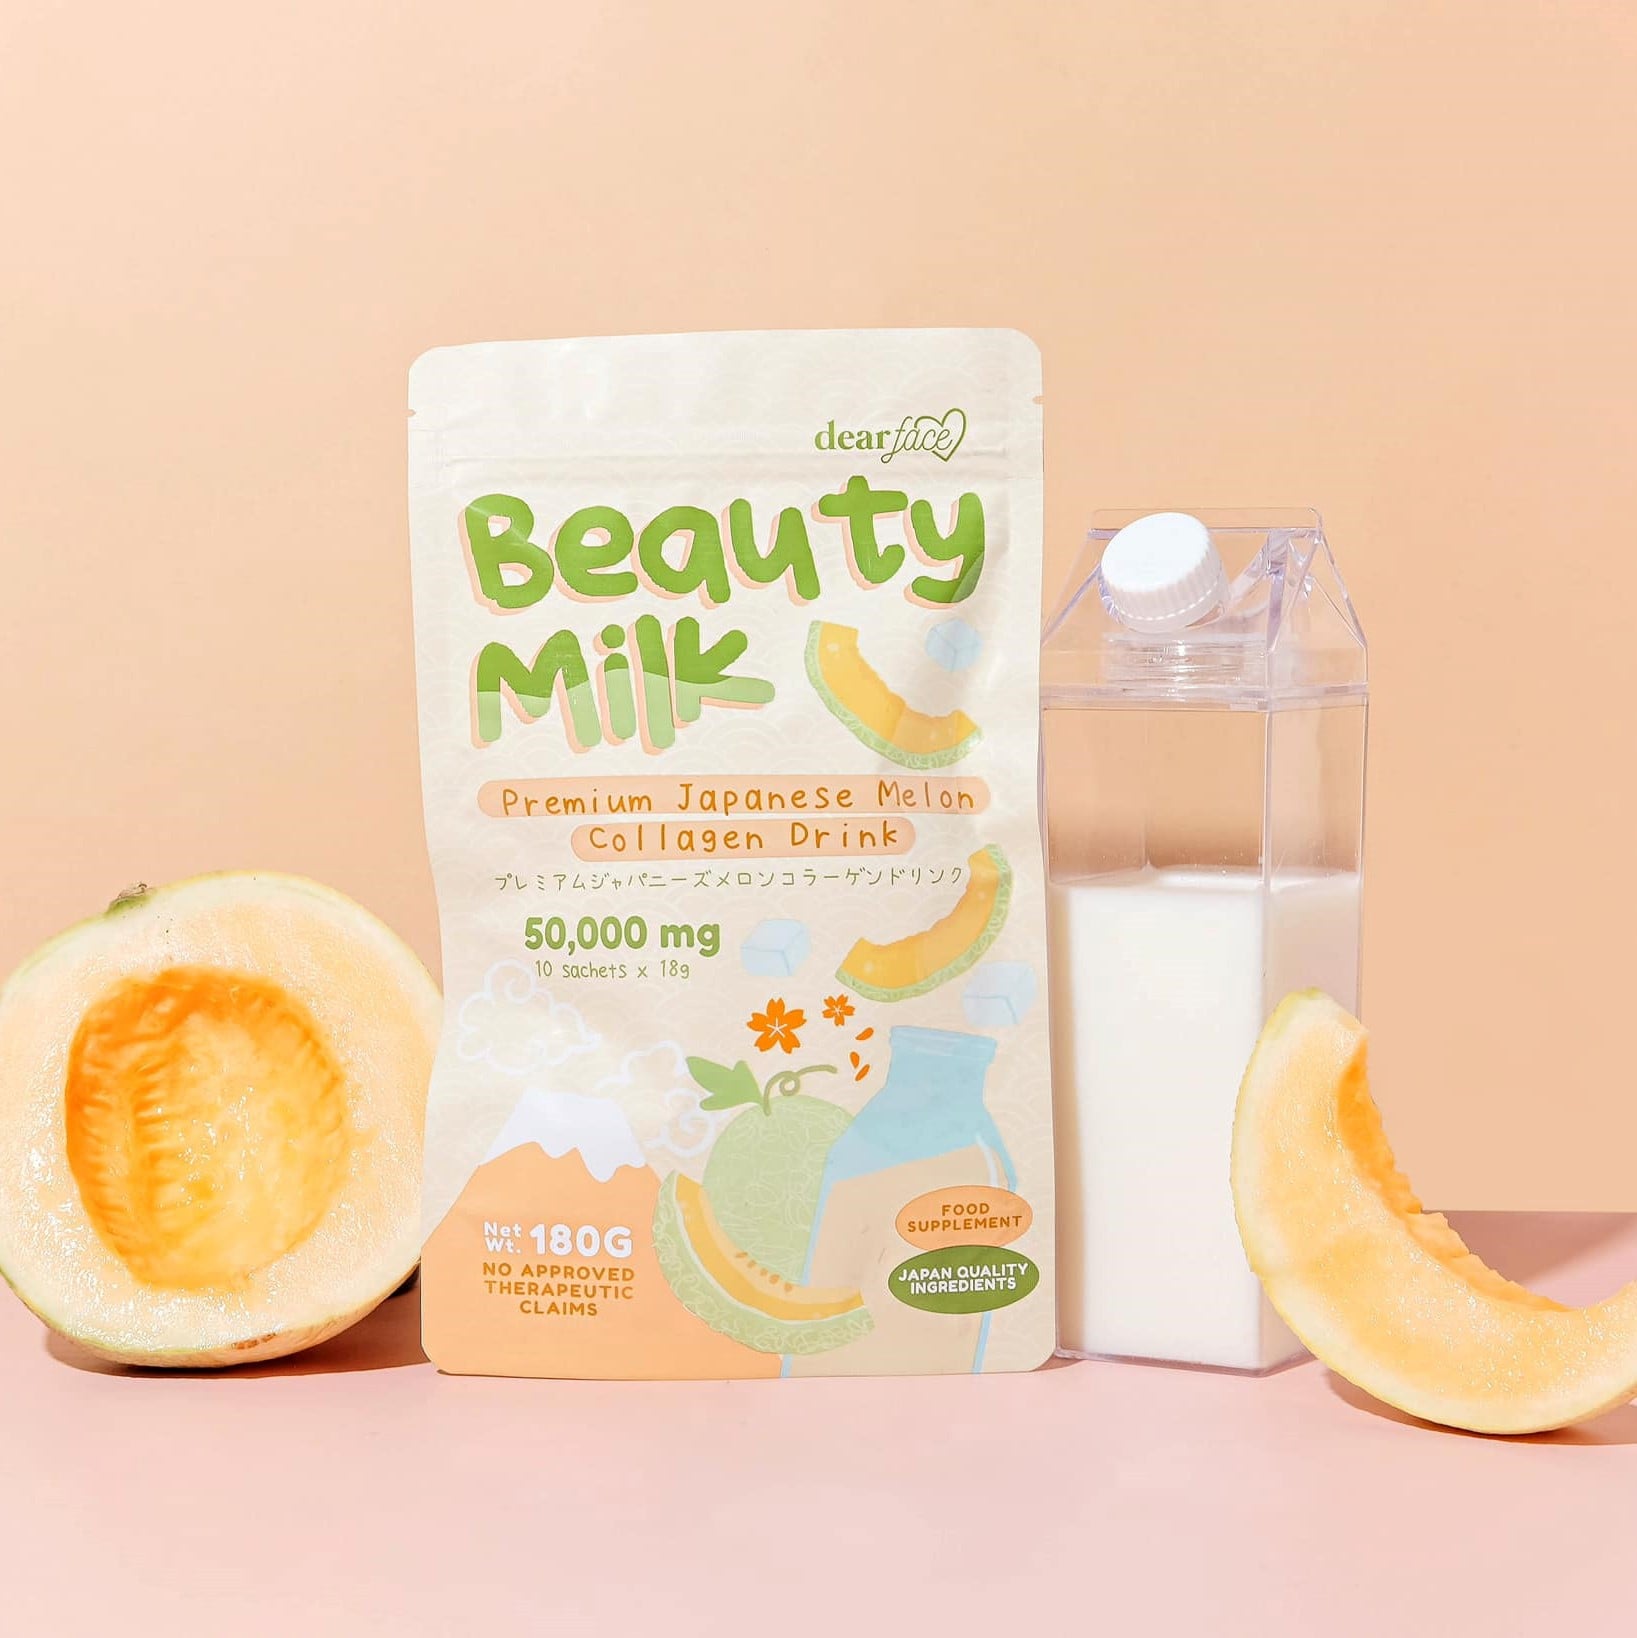 数量限定!特売 Dear Face Beauty Milk Melon x